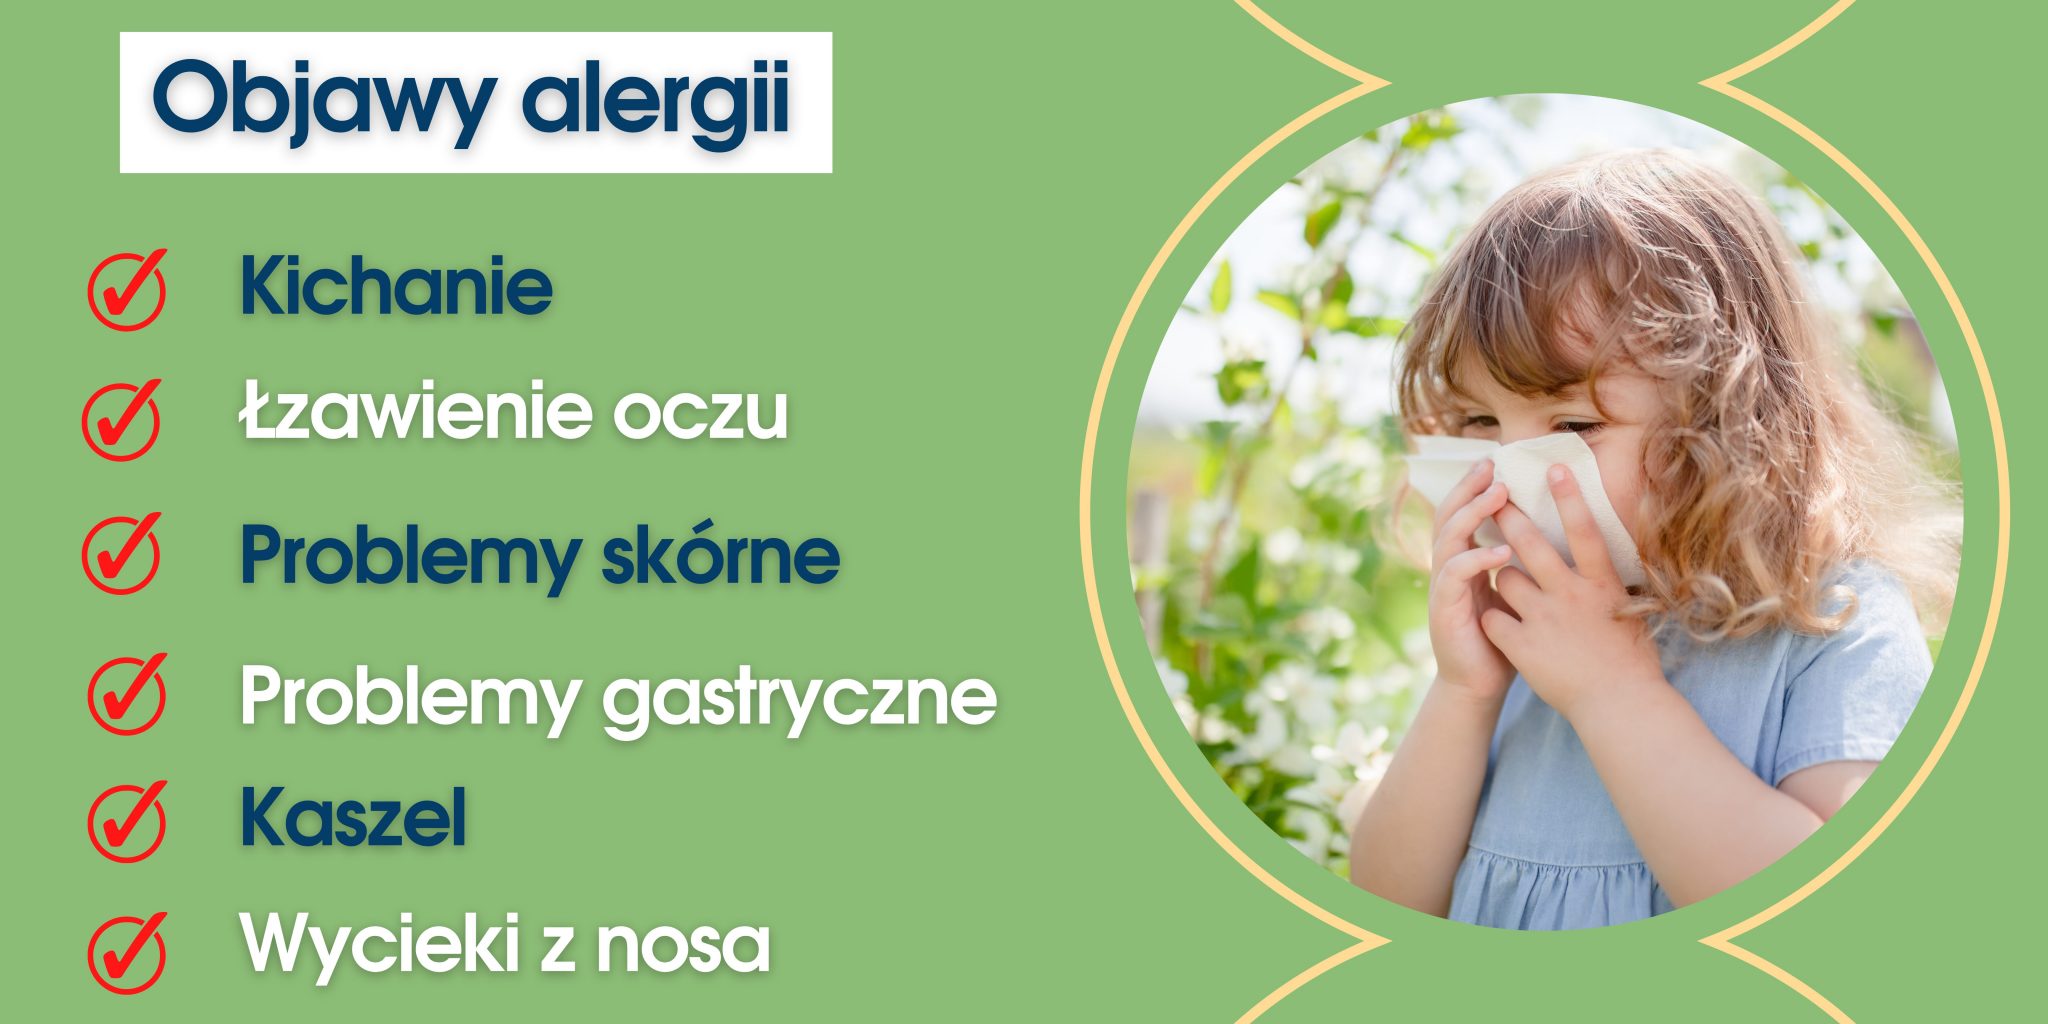 Czym Jest Alergia Objawy Alergii Polmed S A Blog My Xxx Hot Girl 6325